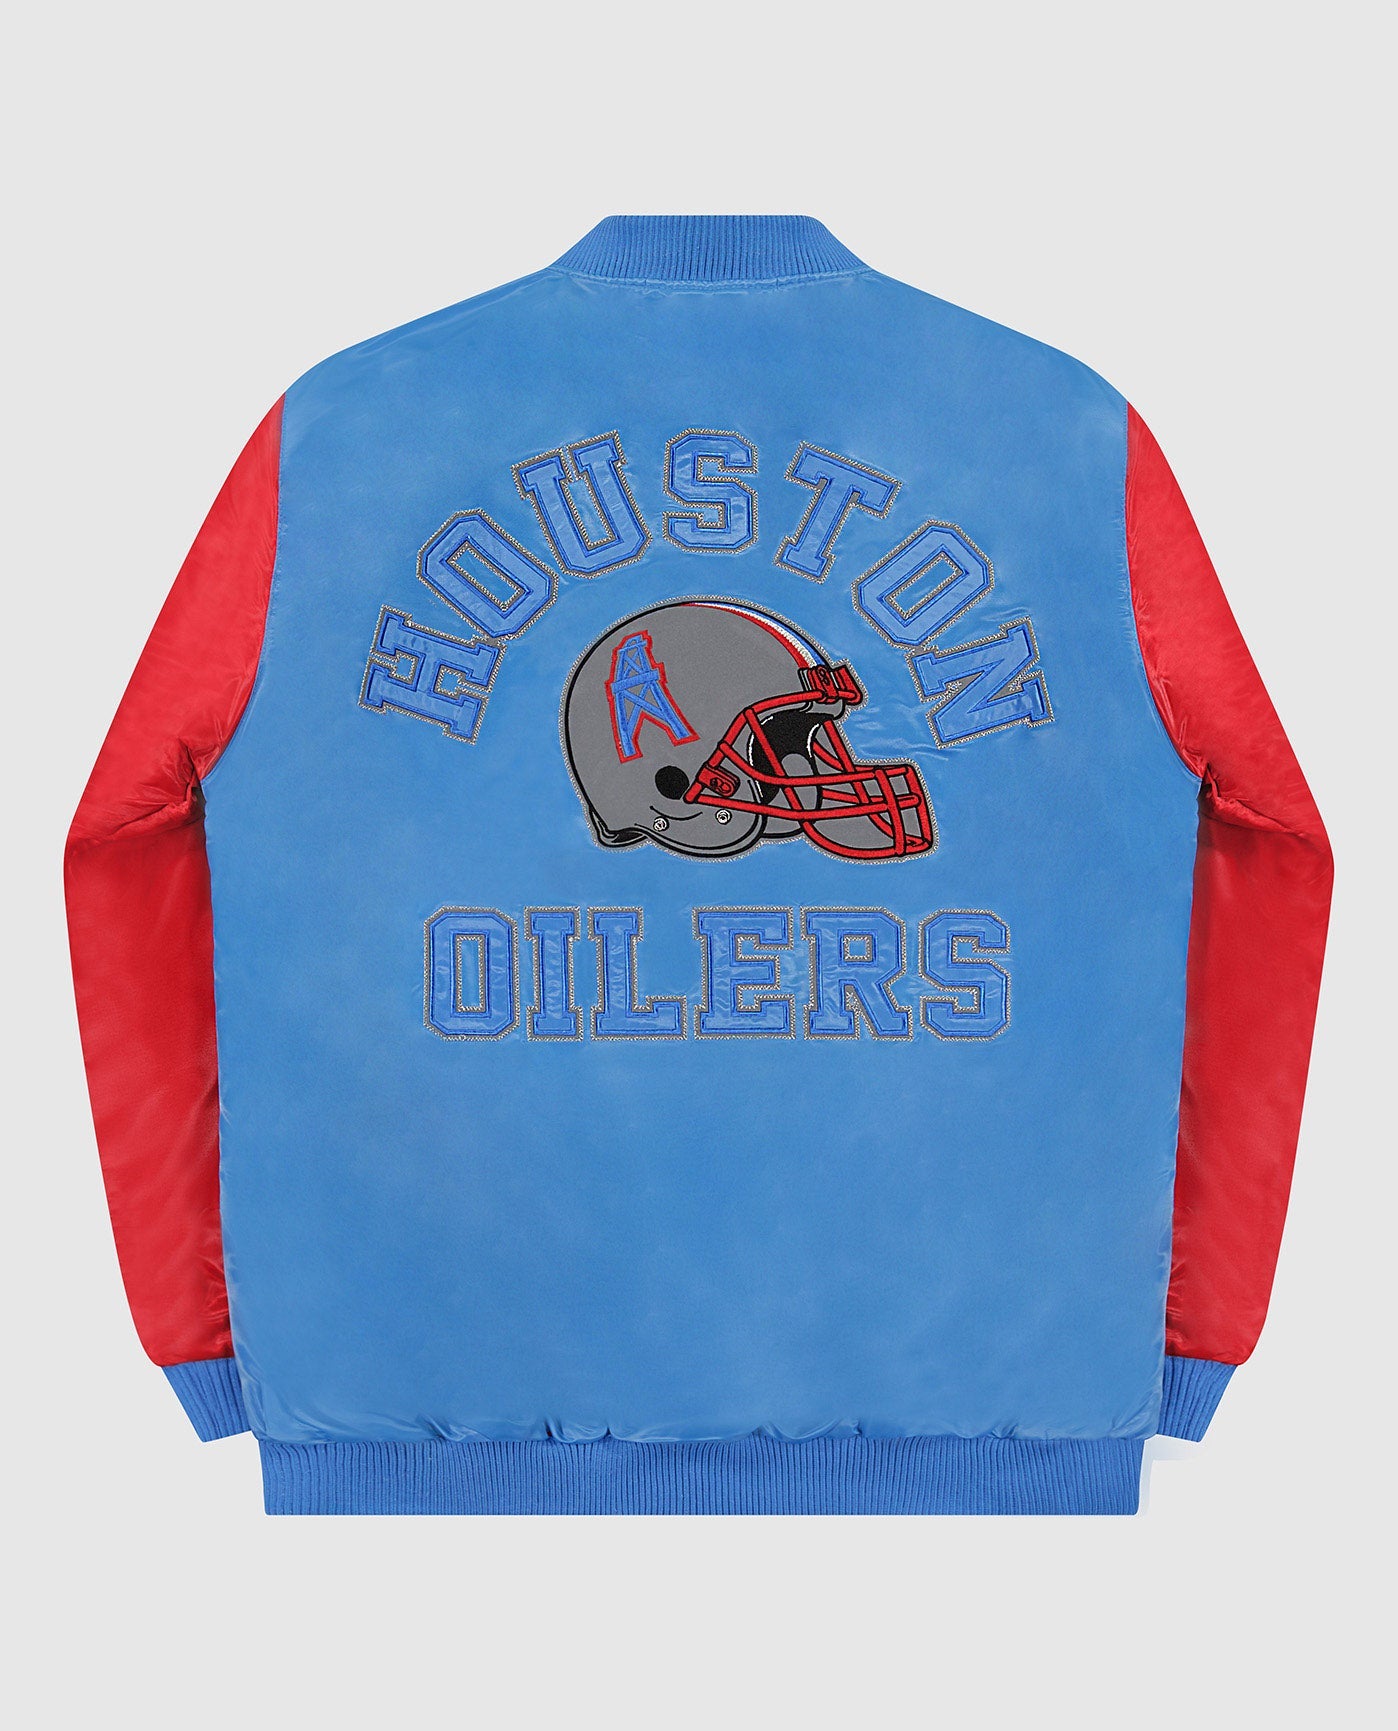 Houston Oilers Baseball Jacket -  Worldwide Shipping